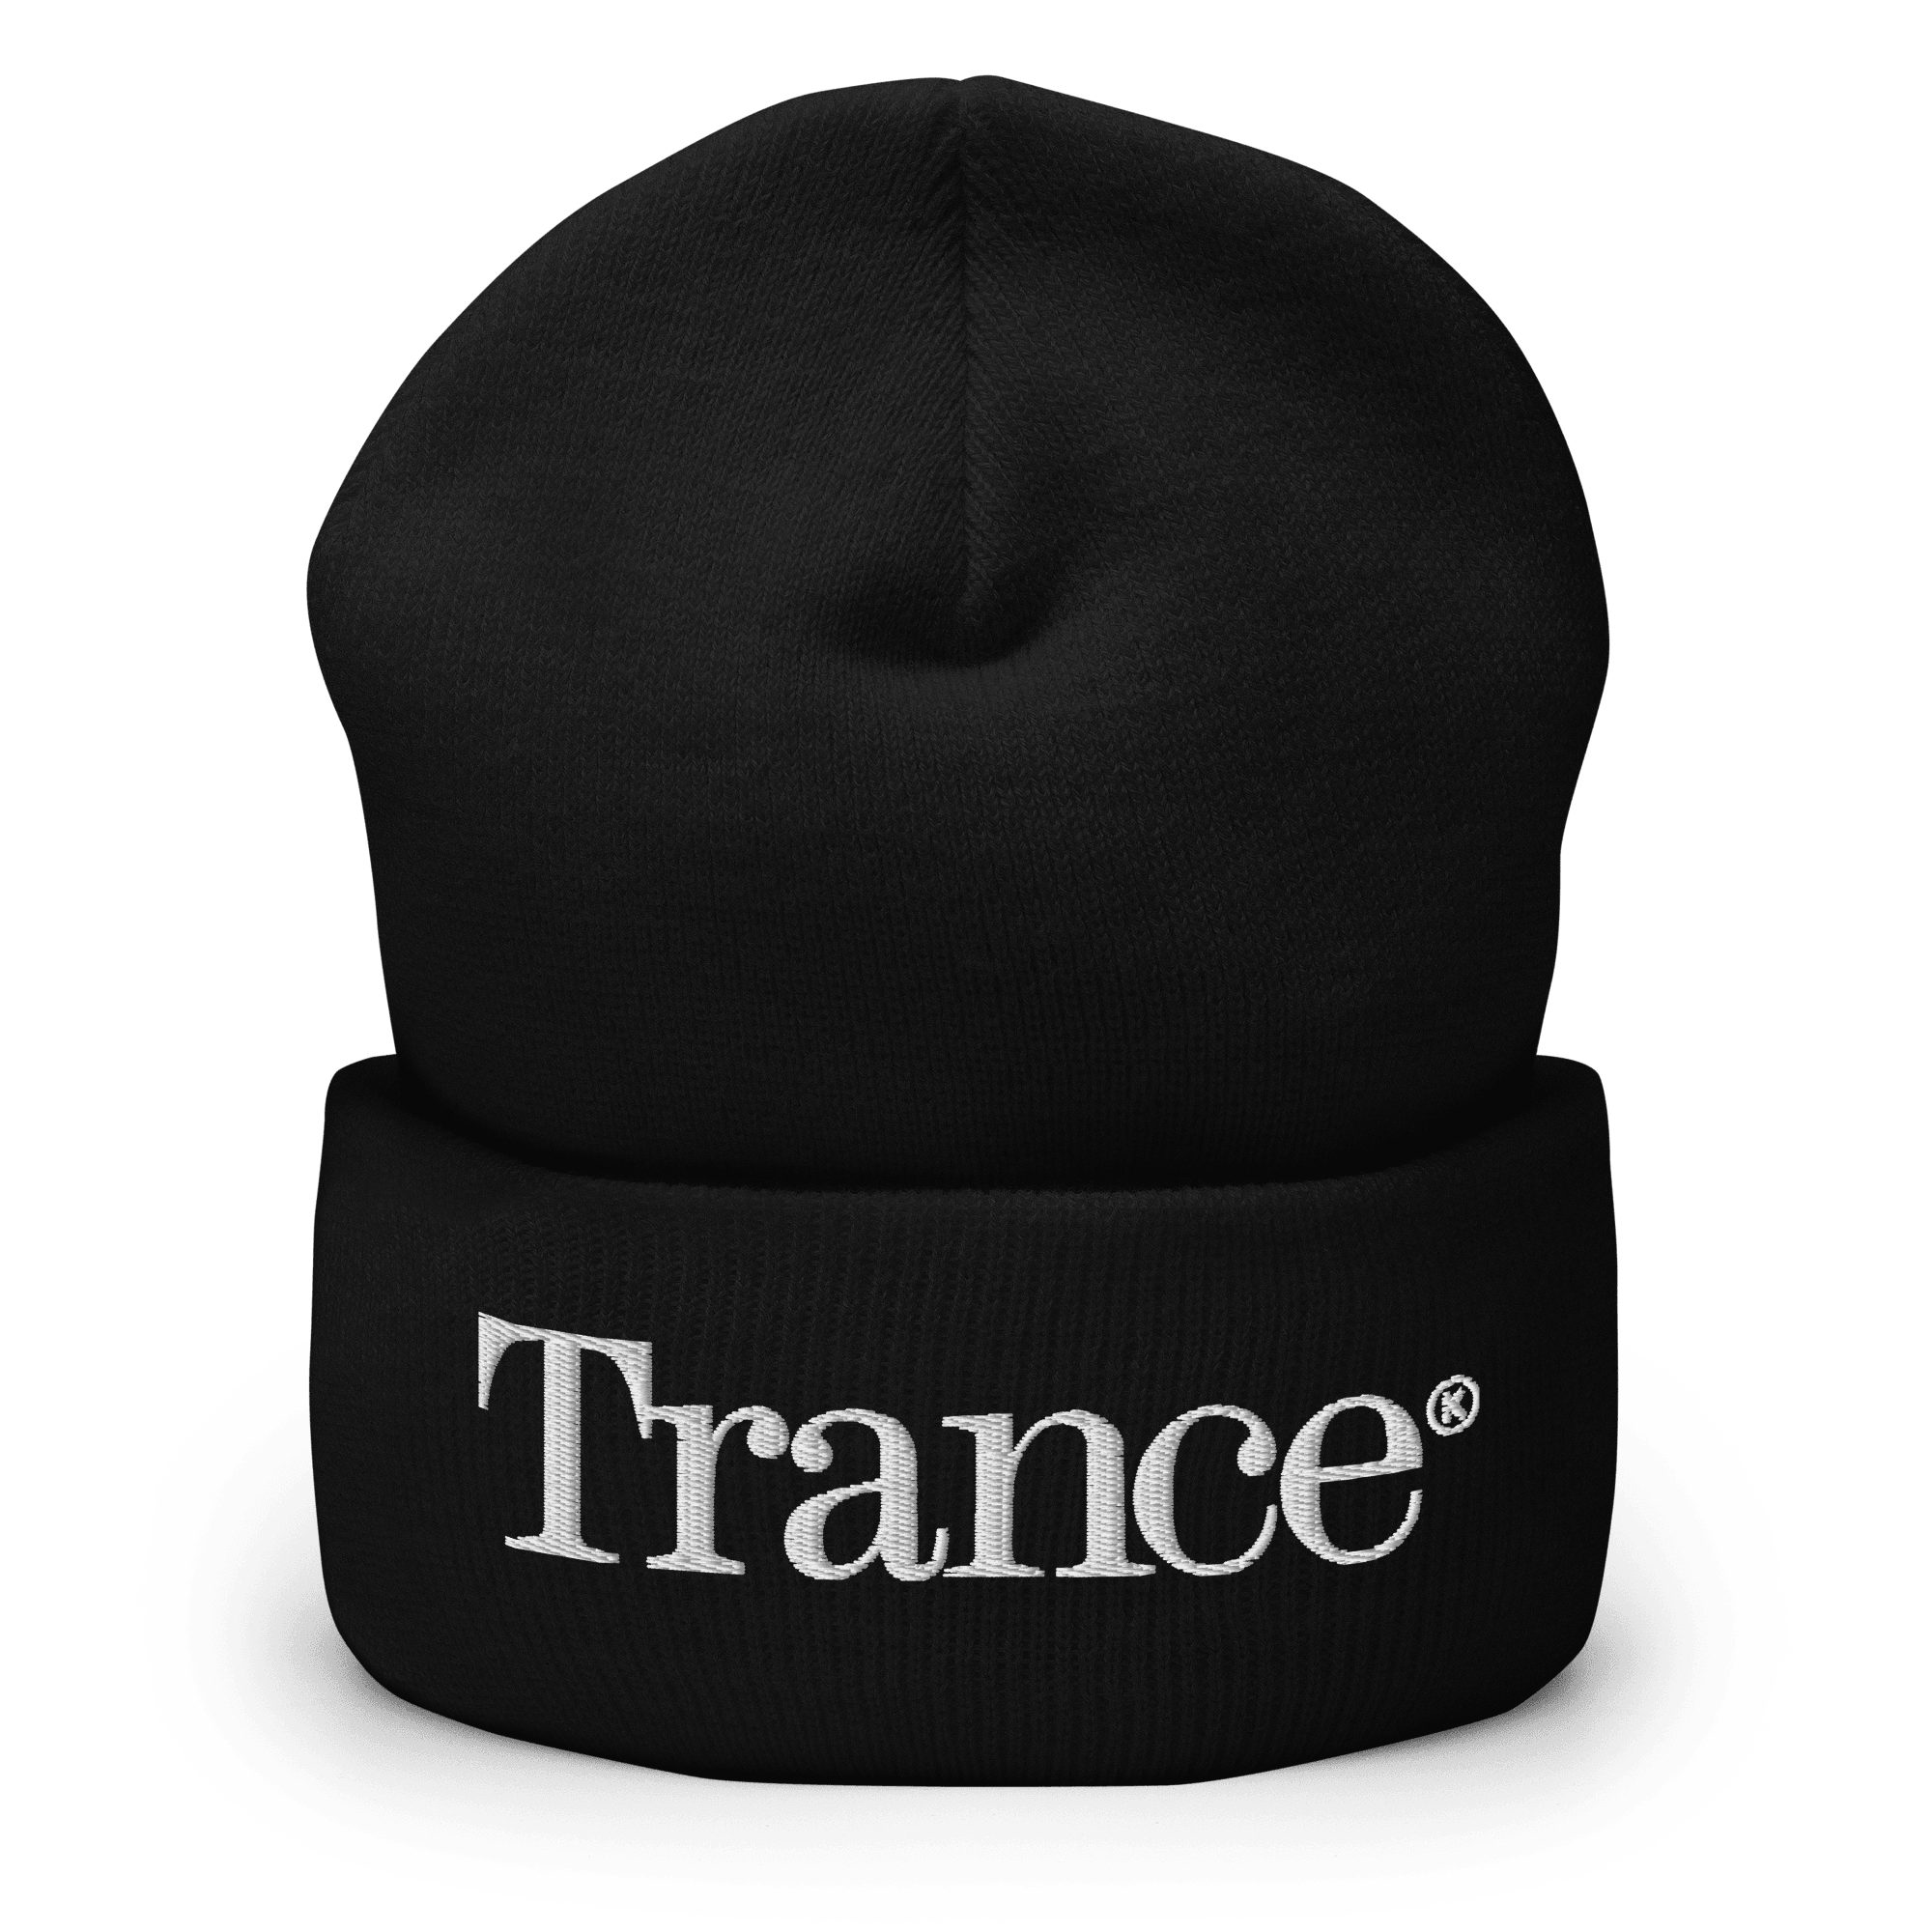 Trance® Beanie - Kikillo Club